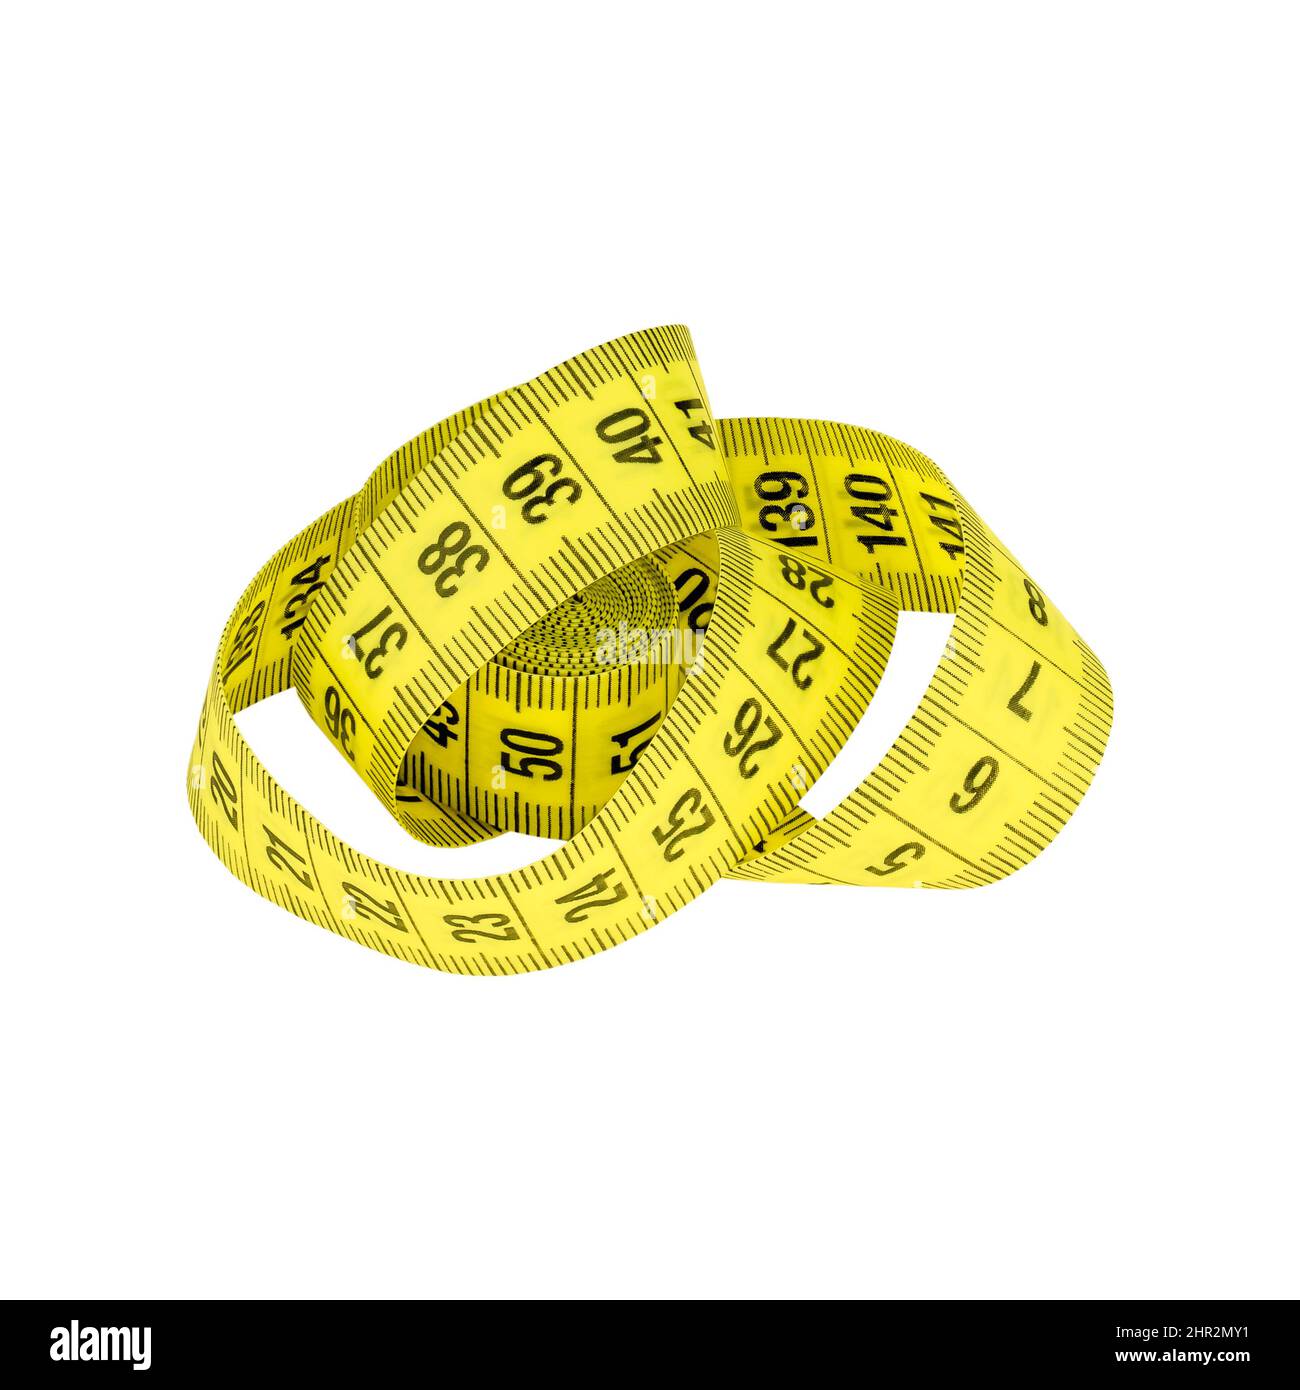 Gelbes Messband isoliert auf weißem Hintergrund als Design-Element des Pakets. Messgerät - ein Gerät zur Längenmessung. Stockfoto